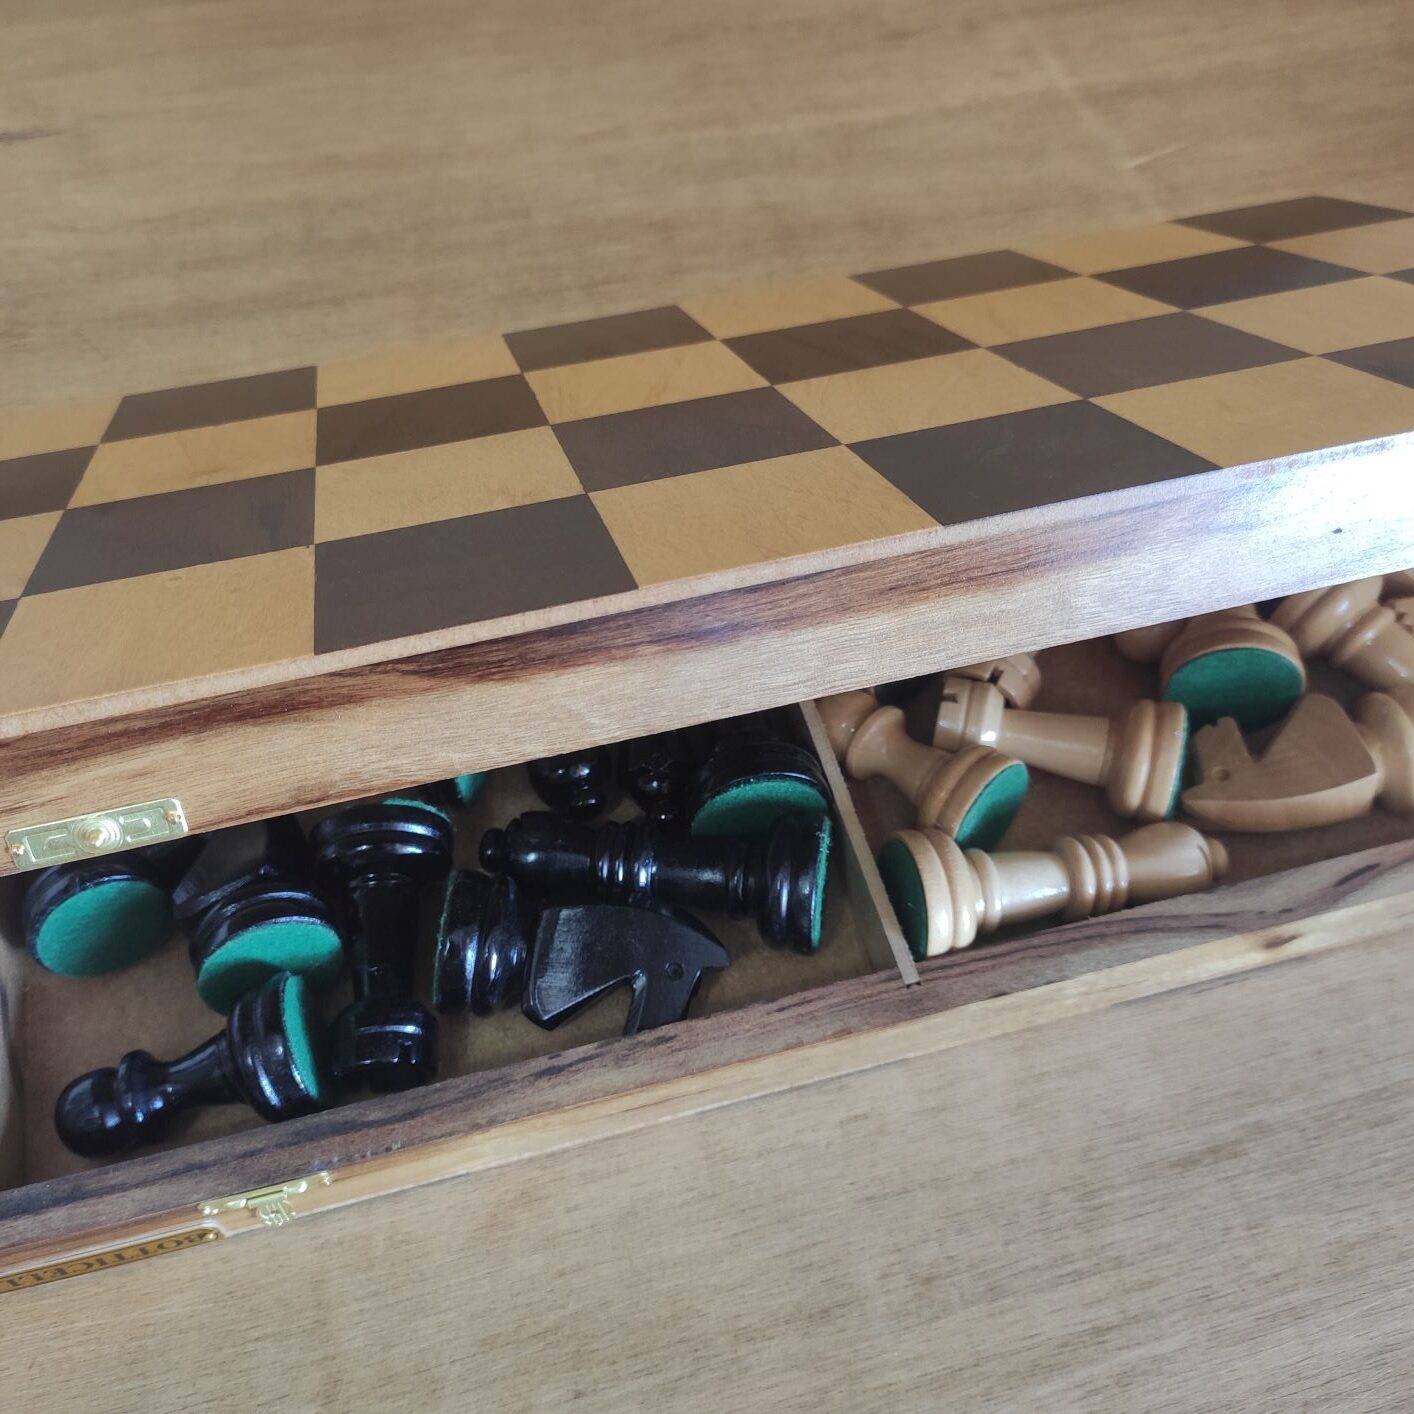 Jogo de xadrez em estojo de madeira 40x40 cm